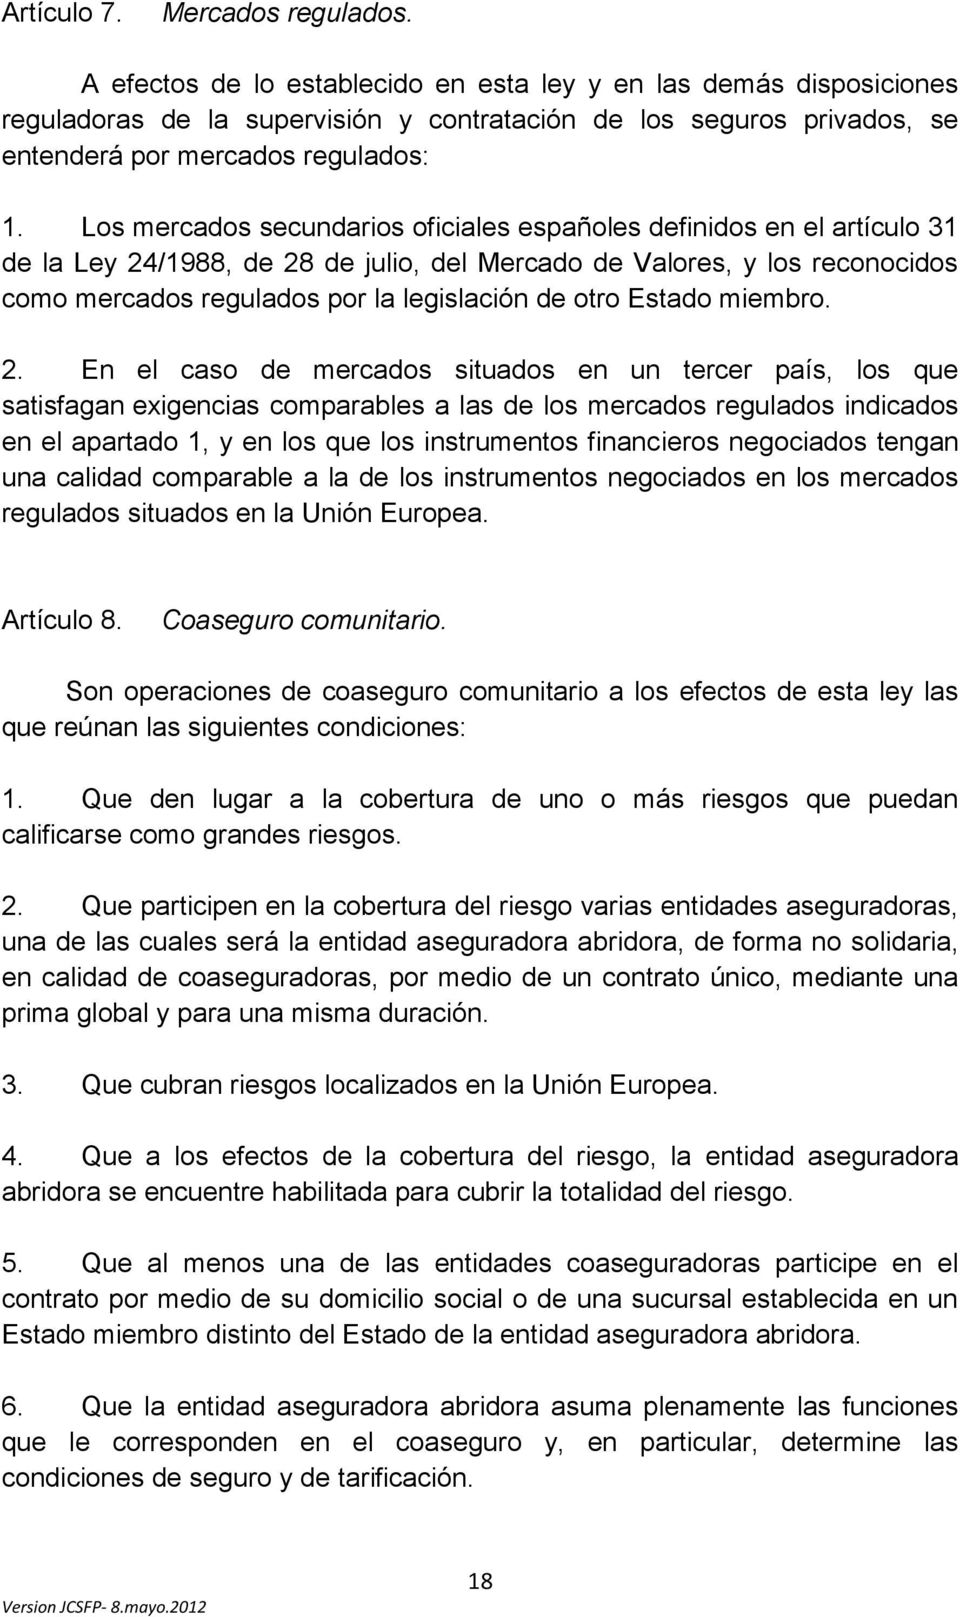 Los mercados secundarios oficiales españoles definidos en el artículo 31 de la Ley 24/1988, de 28 de julio, del Mercado de Valores, y los reconocidos como mercados regulados por la legislación de